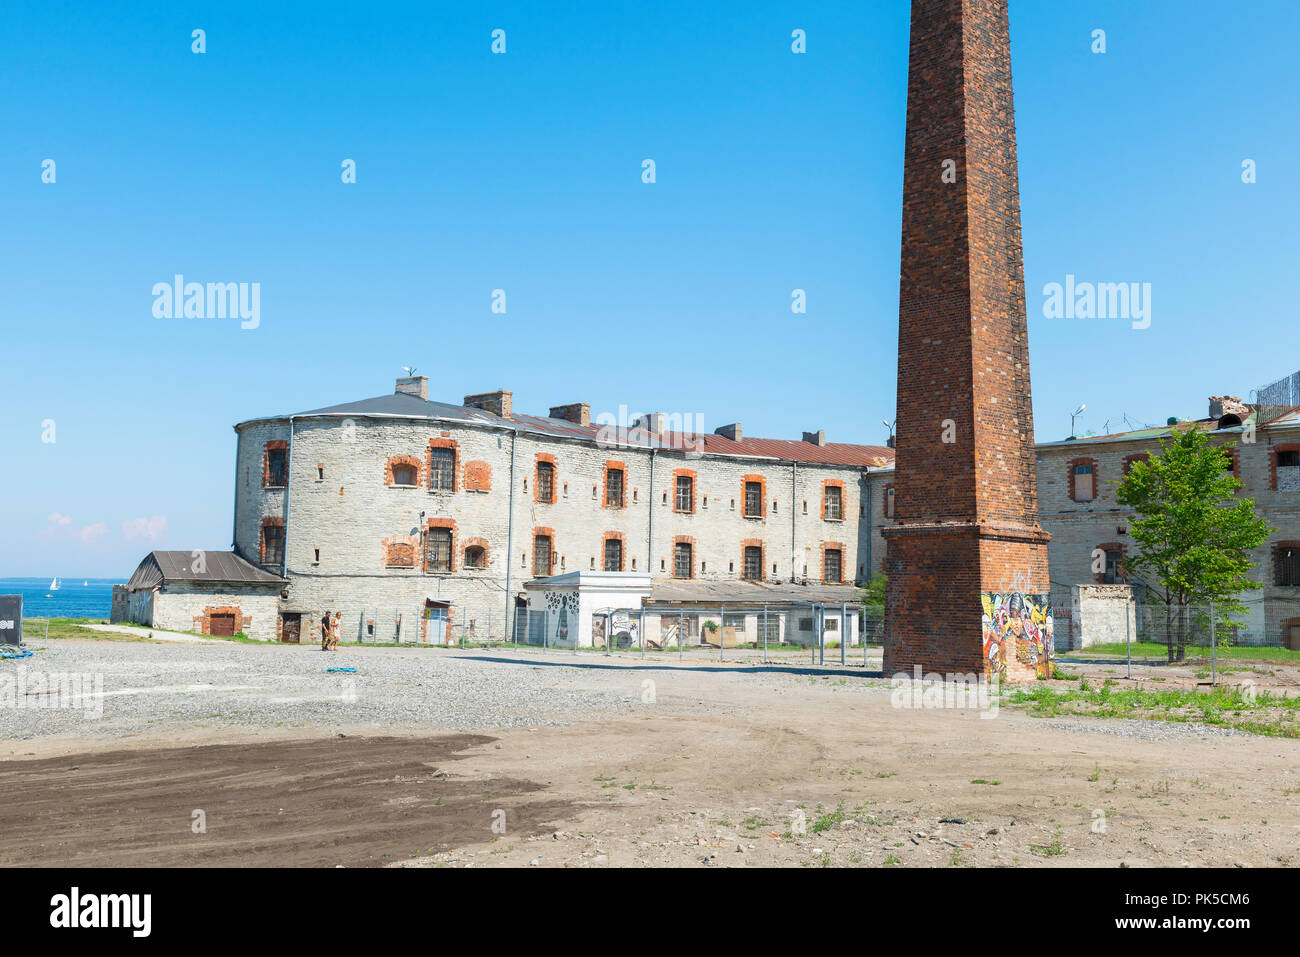 Prisión de Patarei Tallin, vista del edificio abandonado y abandonado de la prisión de Patarei en la zona de la bahía de Kalamaja en Tallin, Estonia. Foto de stock